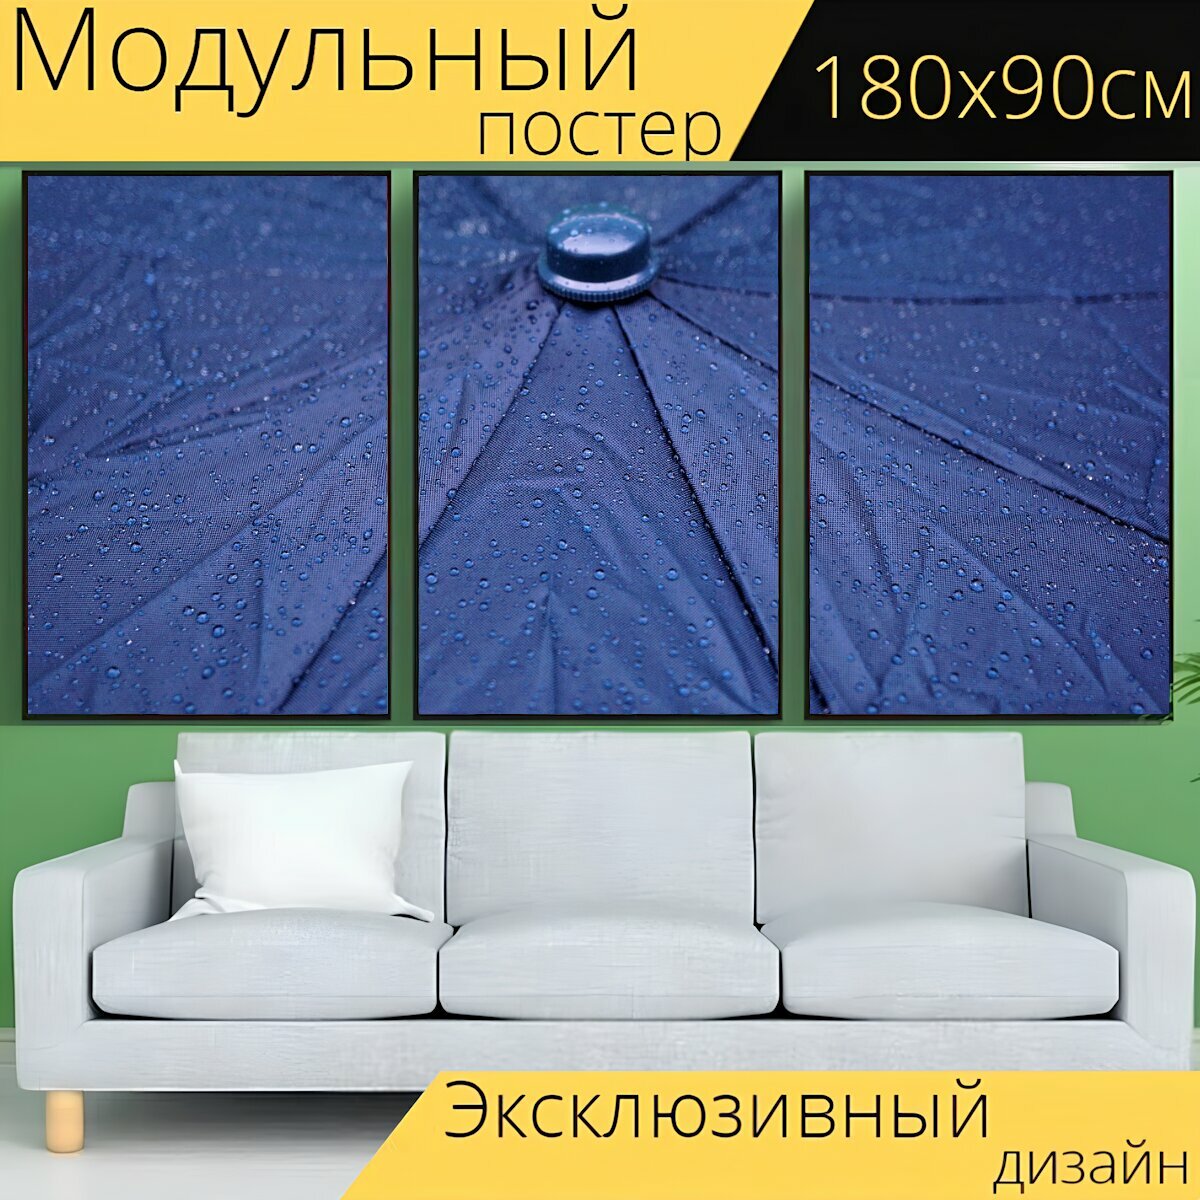 Модульный постер "Дождь, зонтик, капли дождя" 180 x 90 см. для интерьера